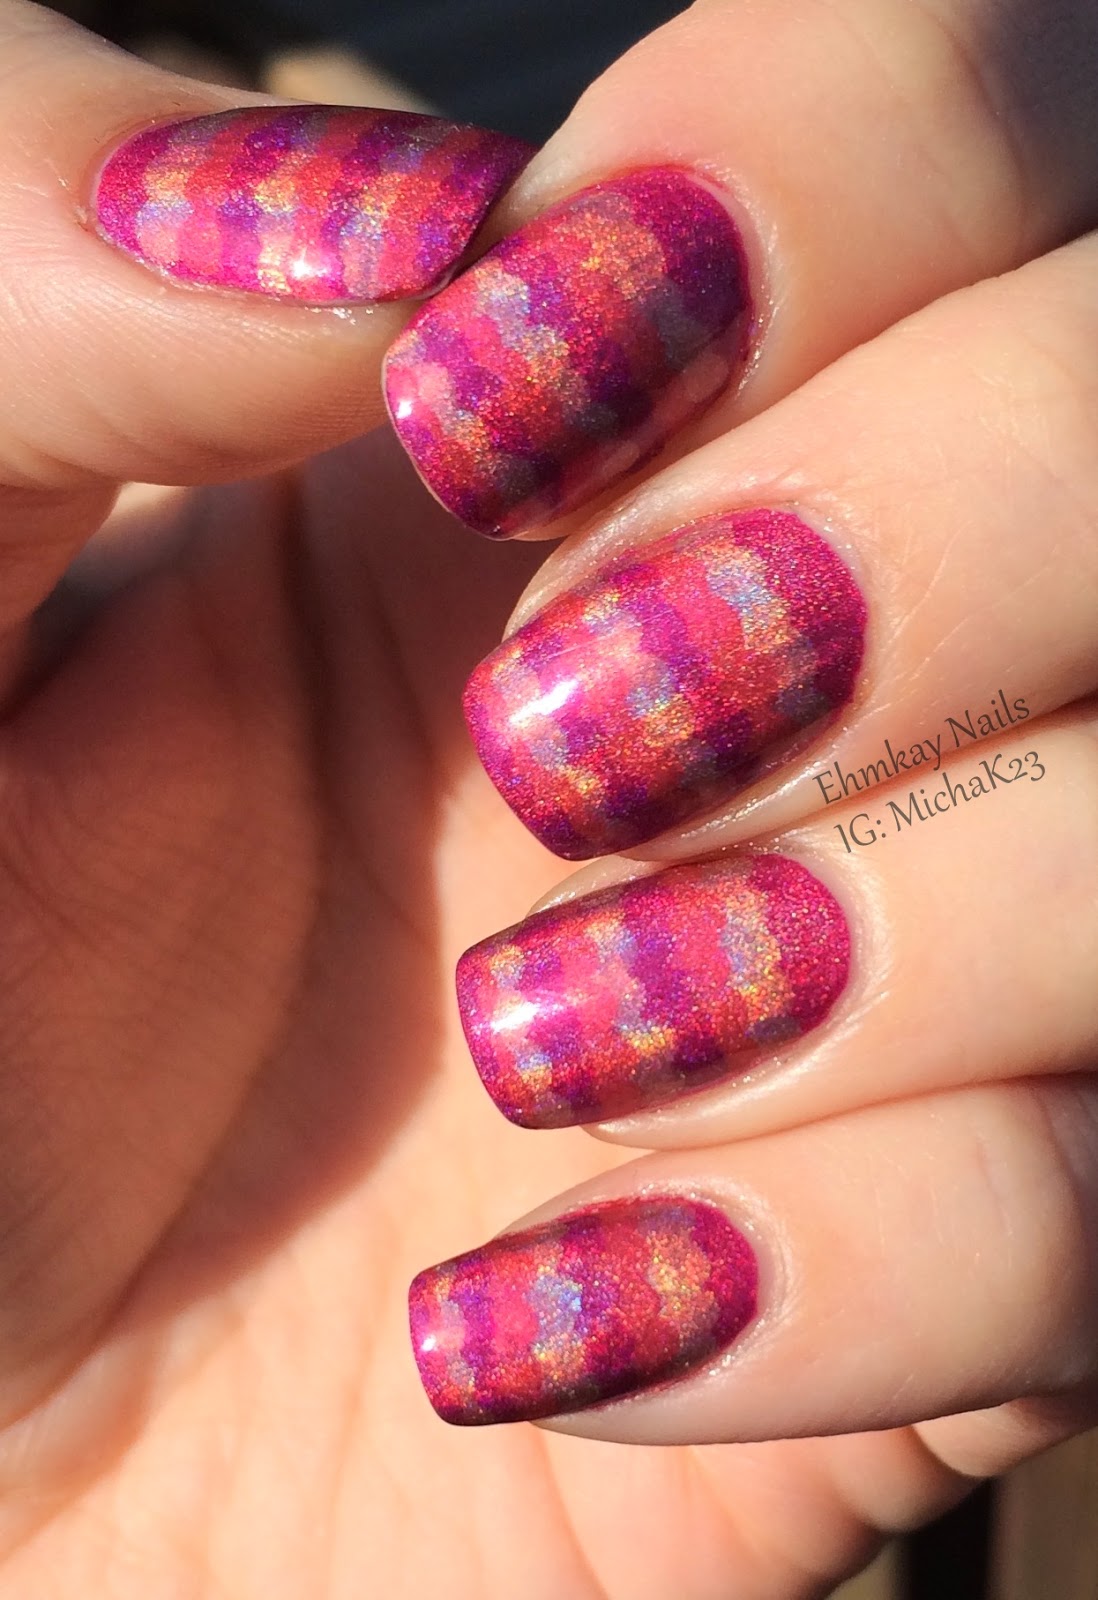 ehmkay nails China Glaze OMG Holographic Ruffle Nail Art